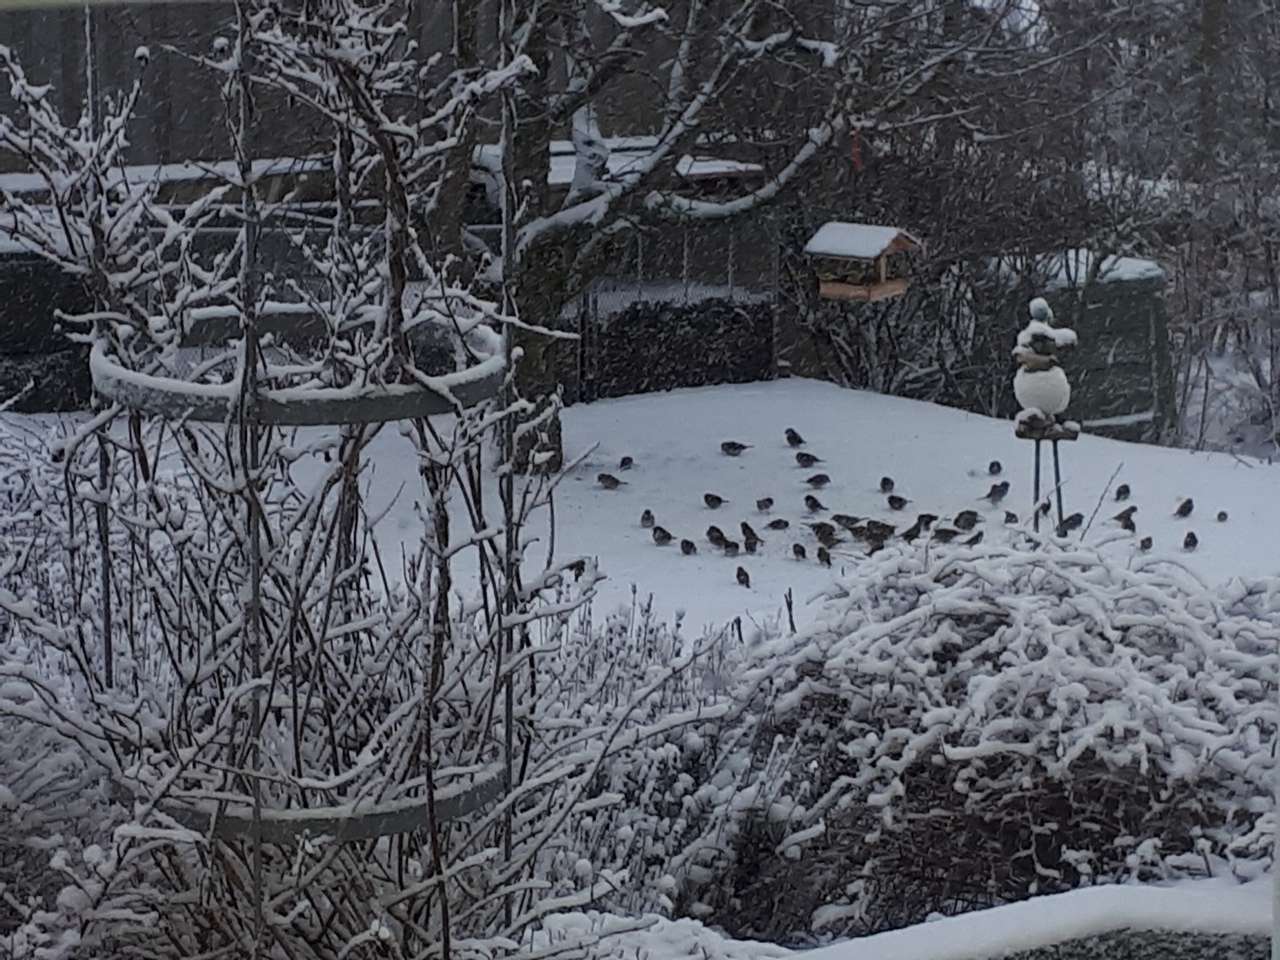 Vogels in de wintertuin legpuzzel online